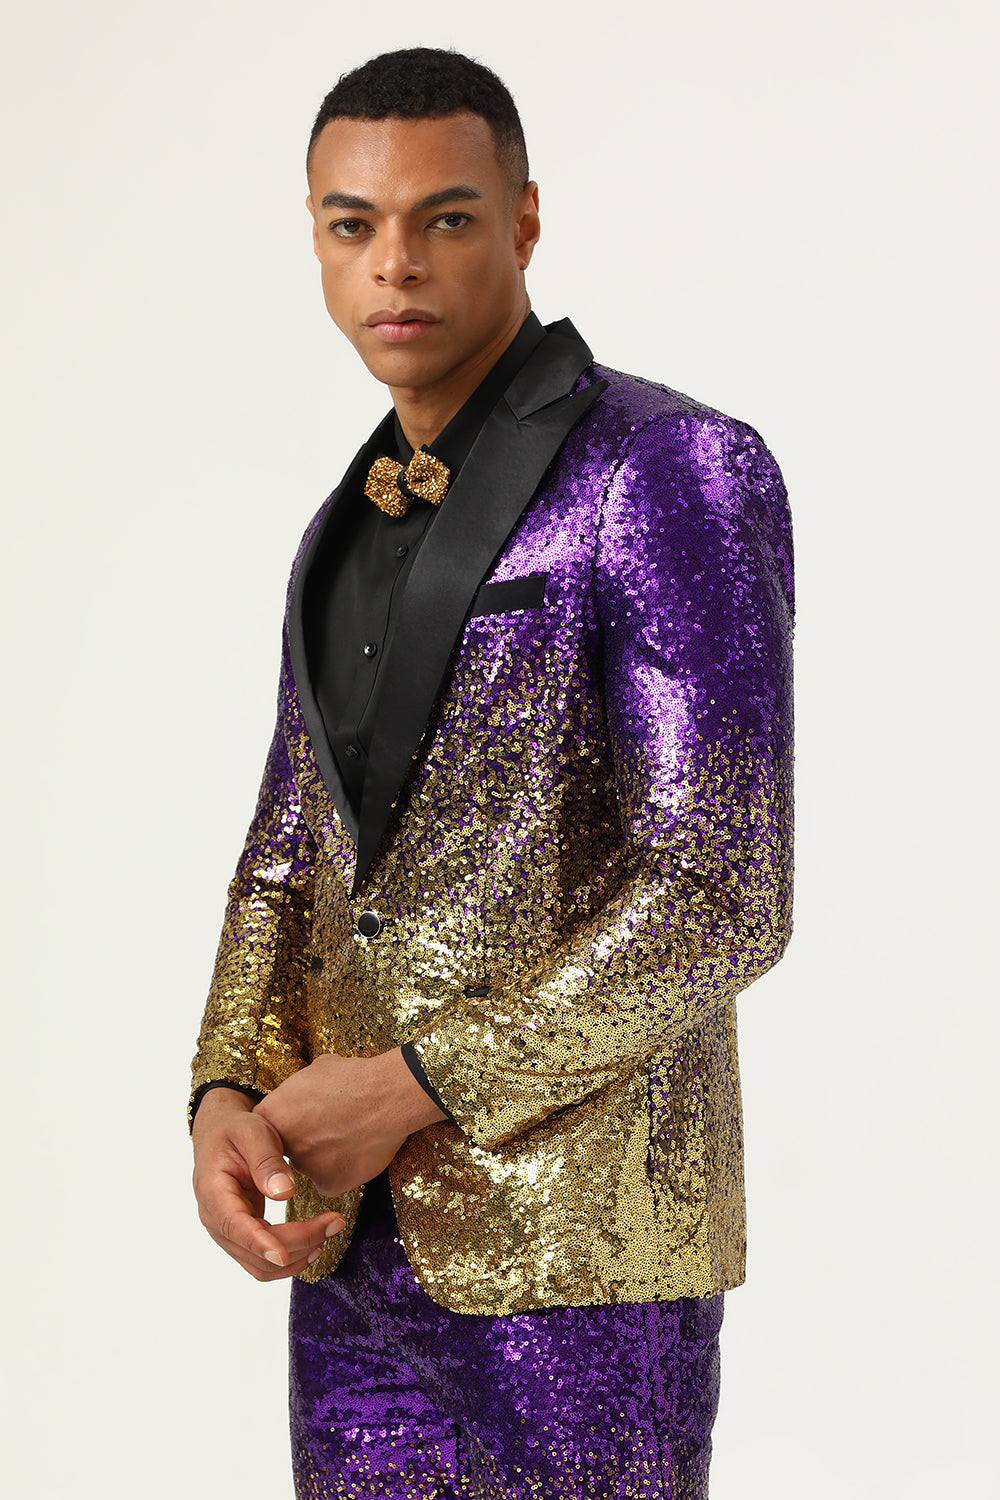 Lvnes Pom Suit Purple Sequined 2 Piece Peaked Lapel One Button Men Suit